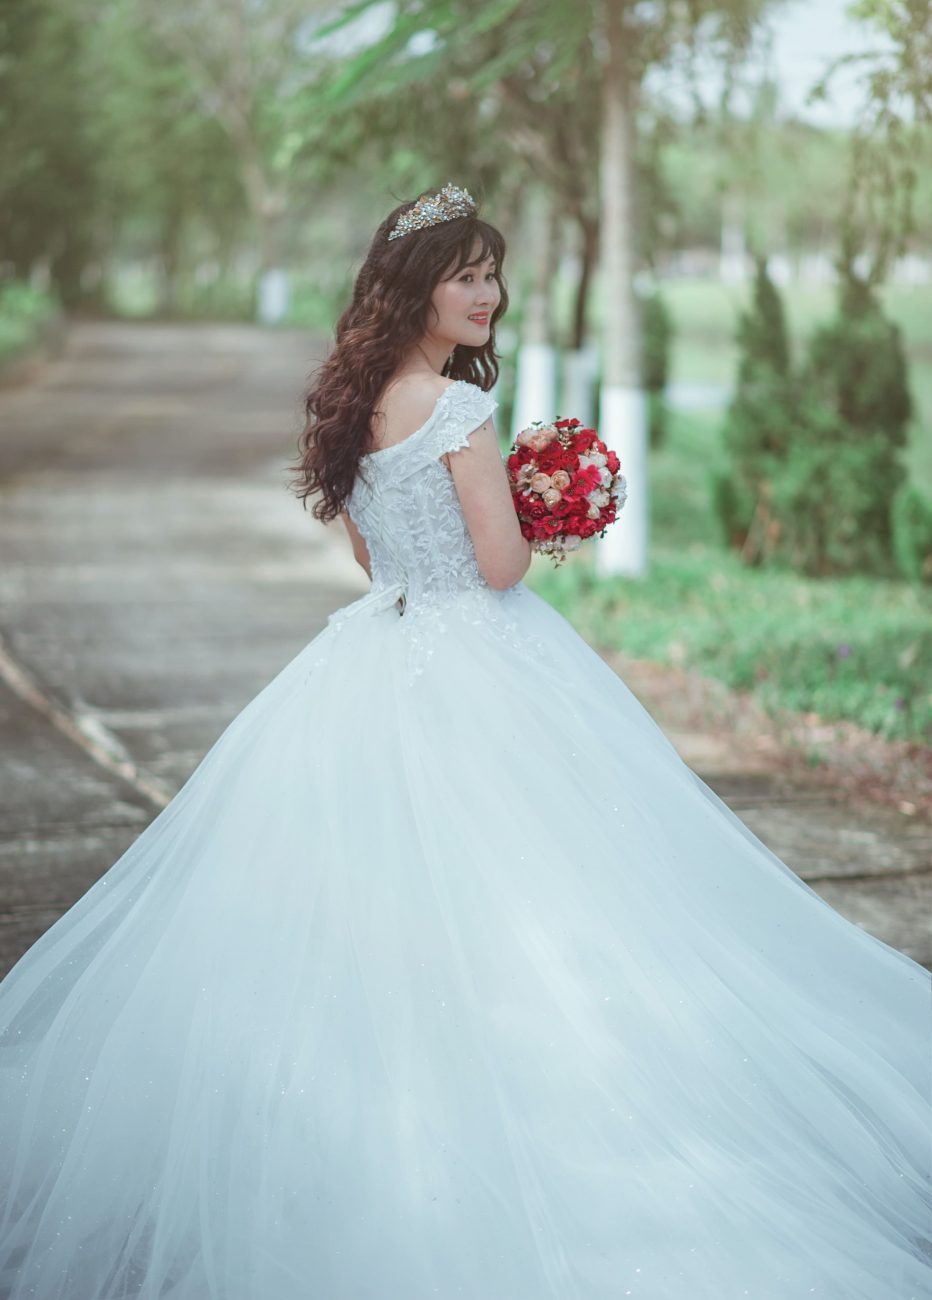 Mulher com vestido de noiva segura um buquê com flores vermelhas. Imagem disponível em Pexels.